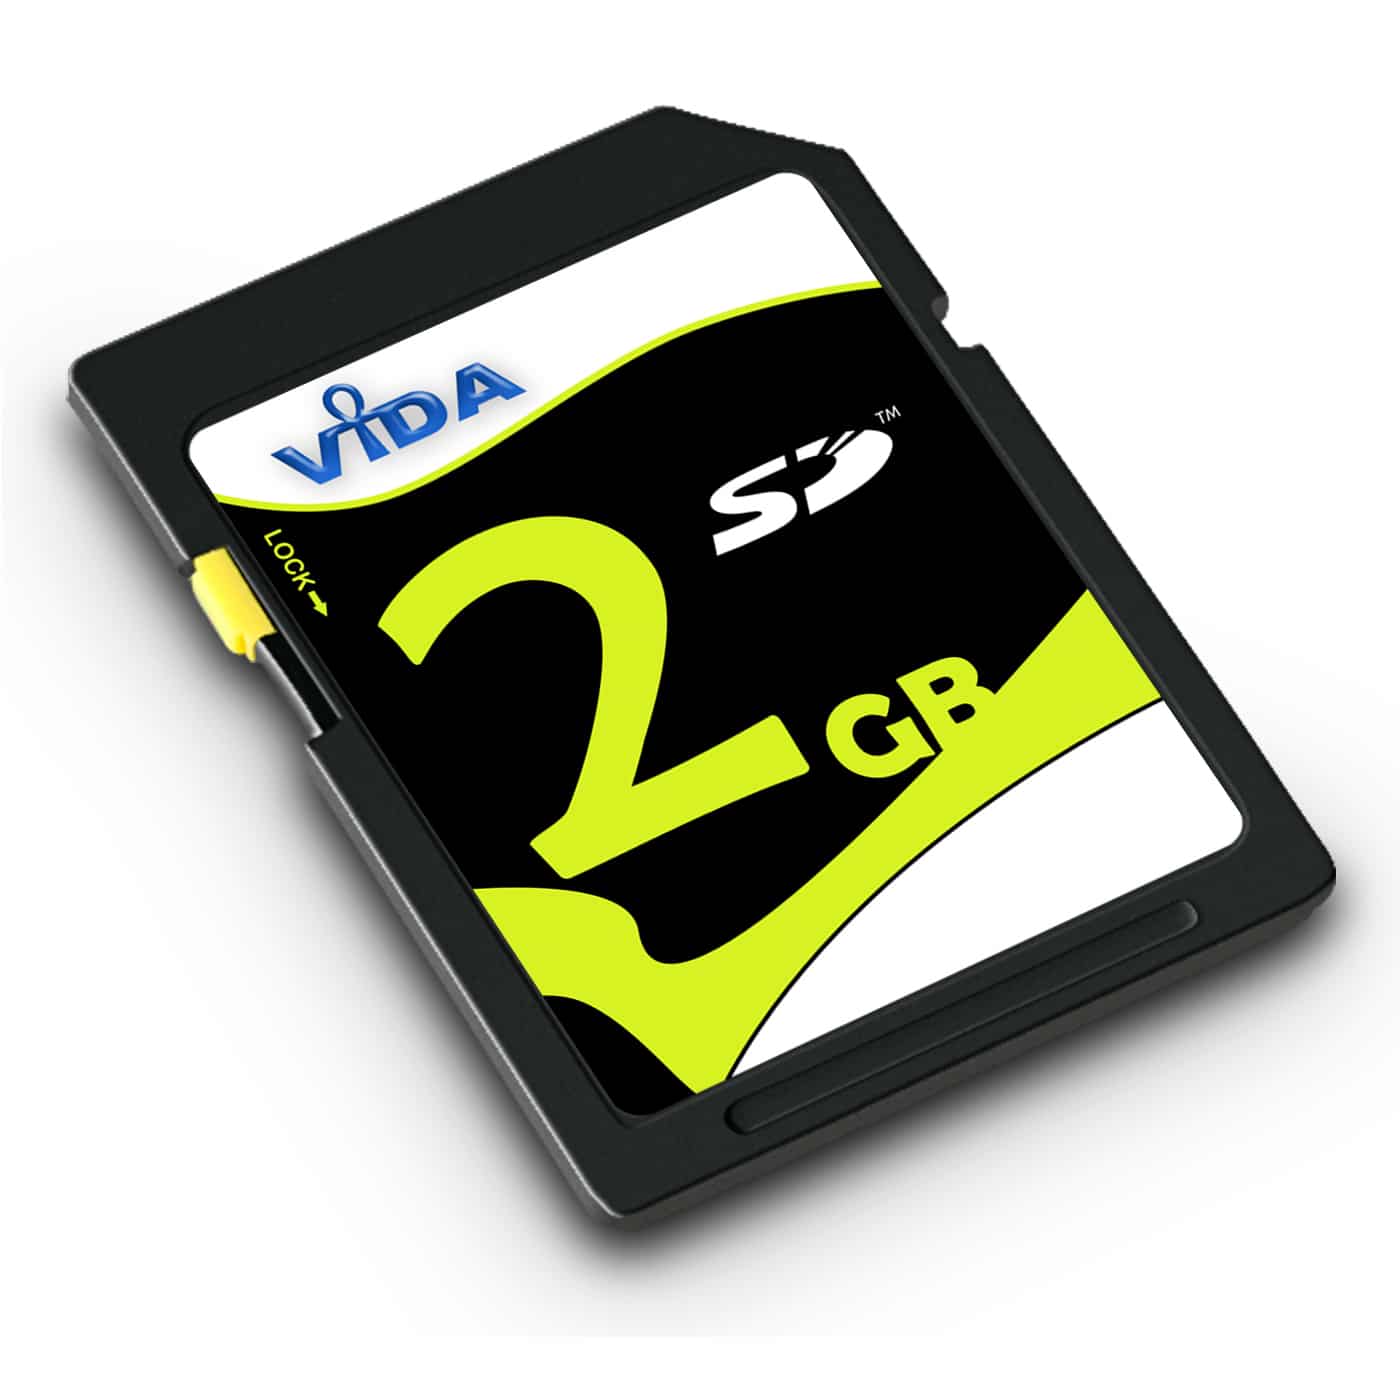 Vida 2GB SD Secure Digital Class 4 Memory Card